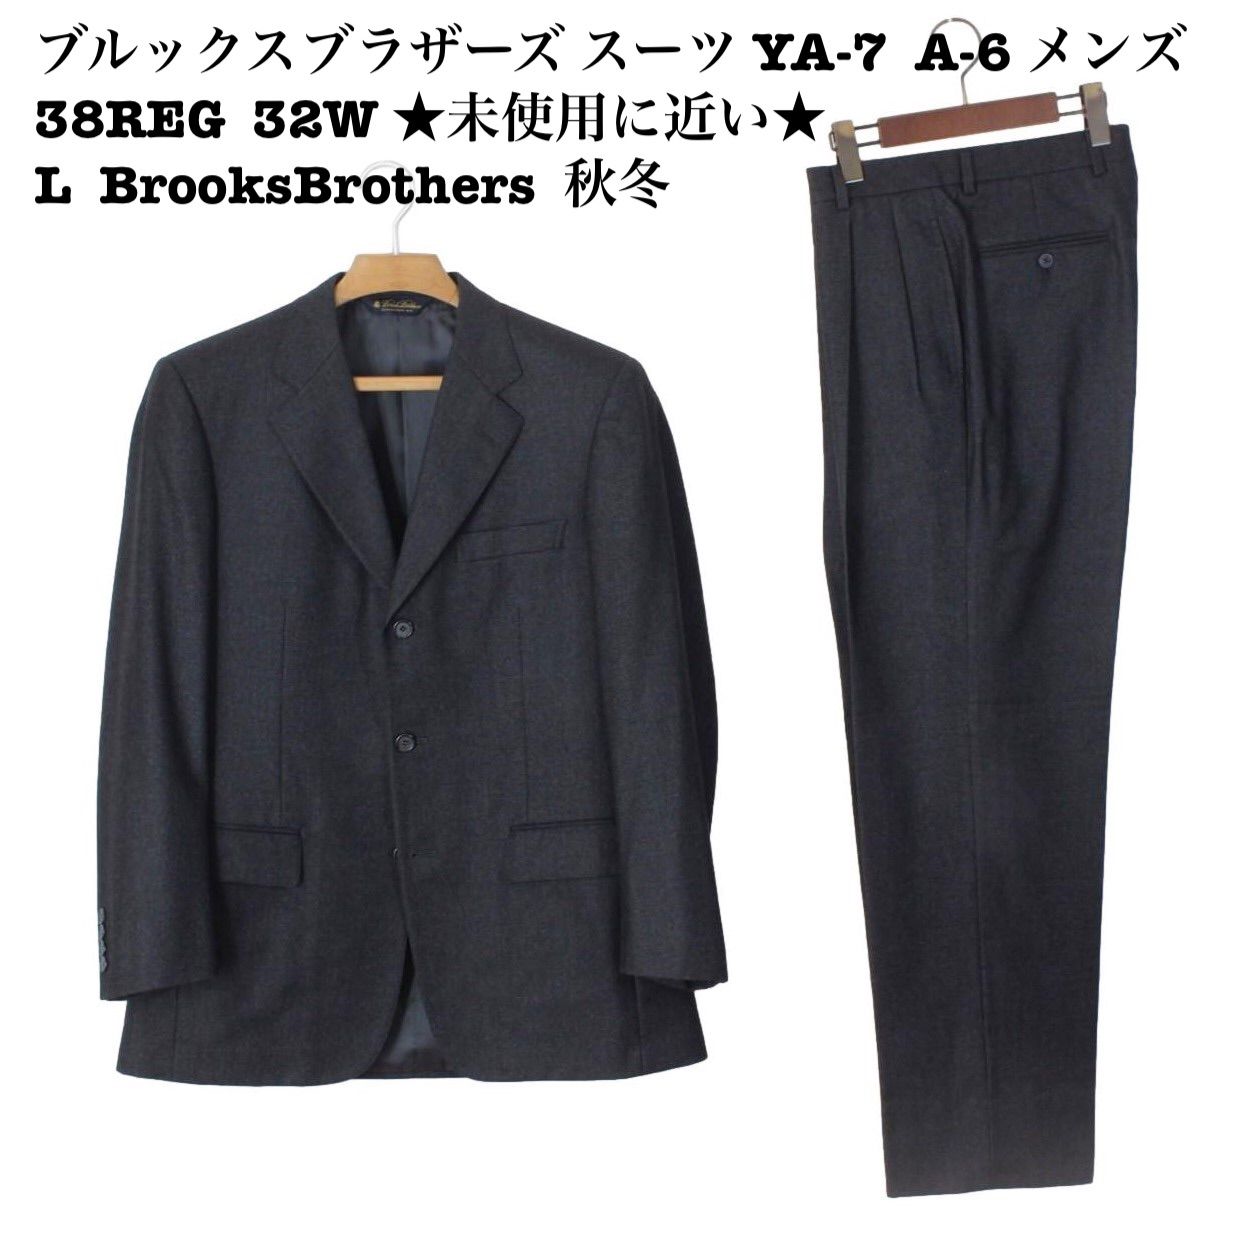 06【極美品】ブルックスブラザーズ スーツ YA-7 A-6 メンズ 38REG 32W 